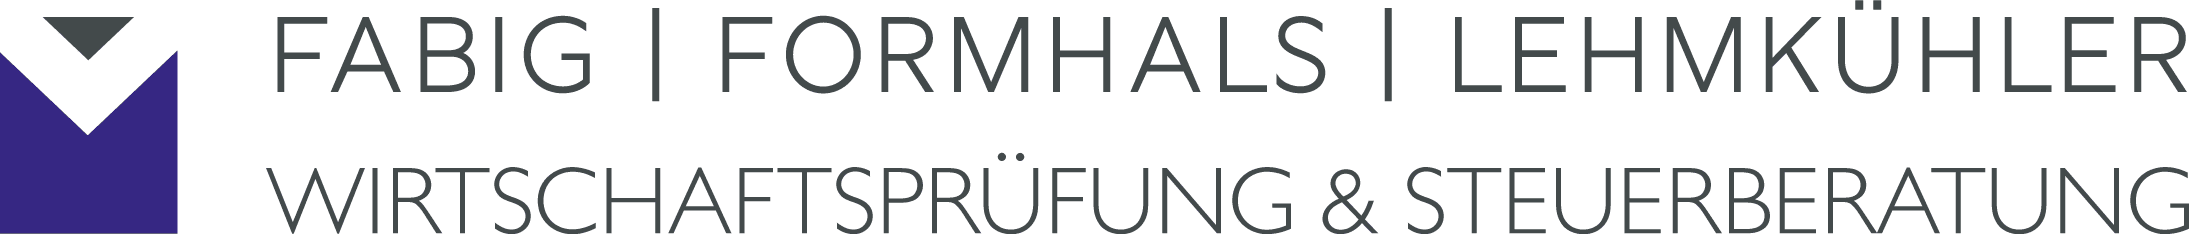 Bild: Logo der Fabig Formhals Lehmkühler GmbH Wirtschaftsprüfungsgesellschaft Steuerberatungsgesellschaft